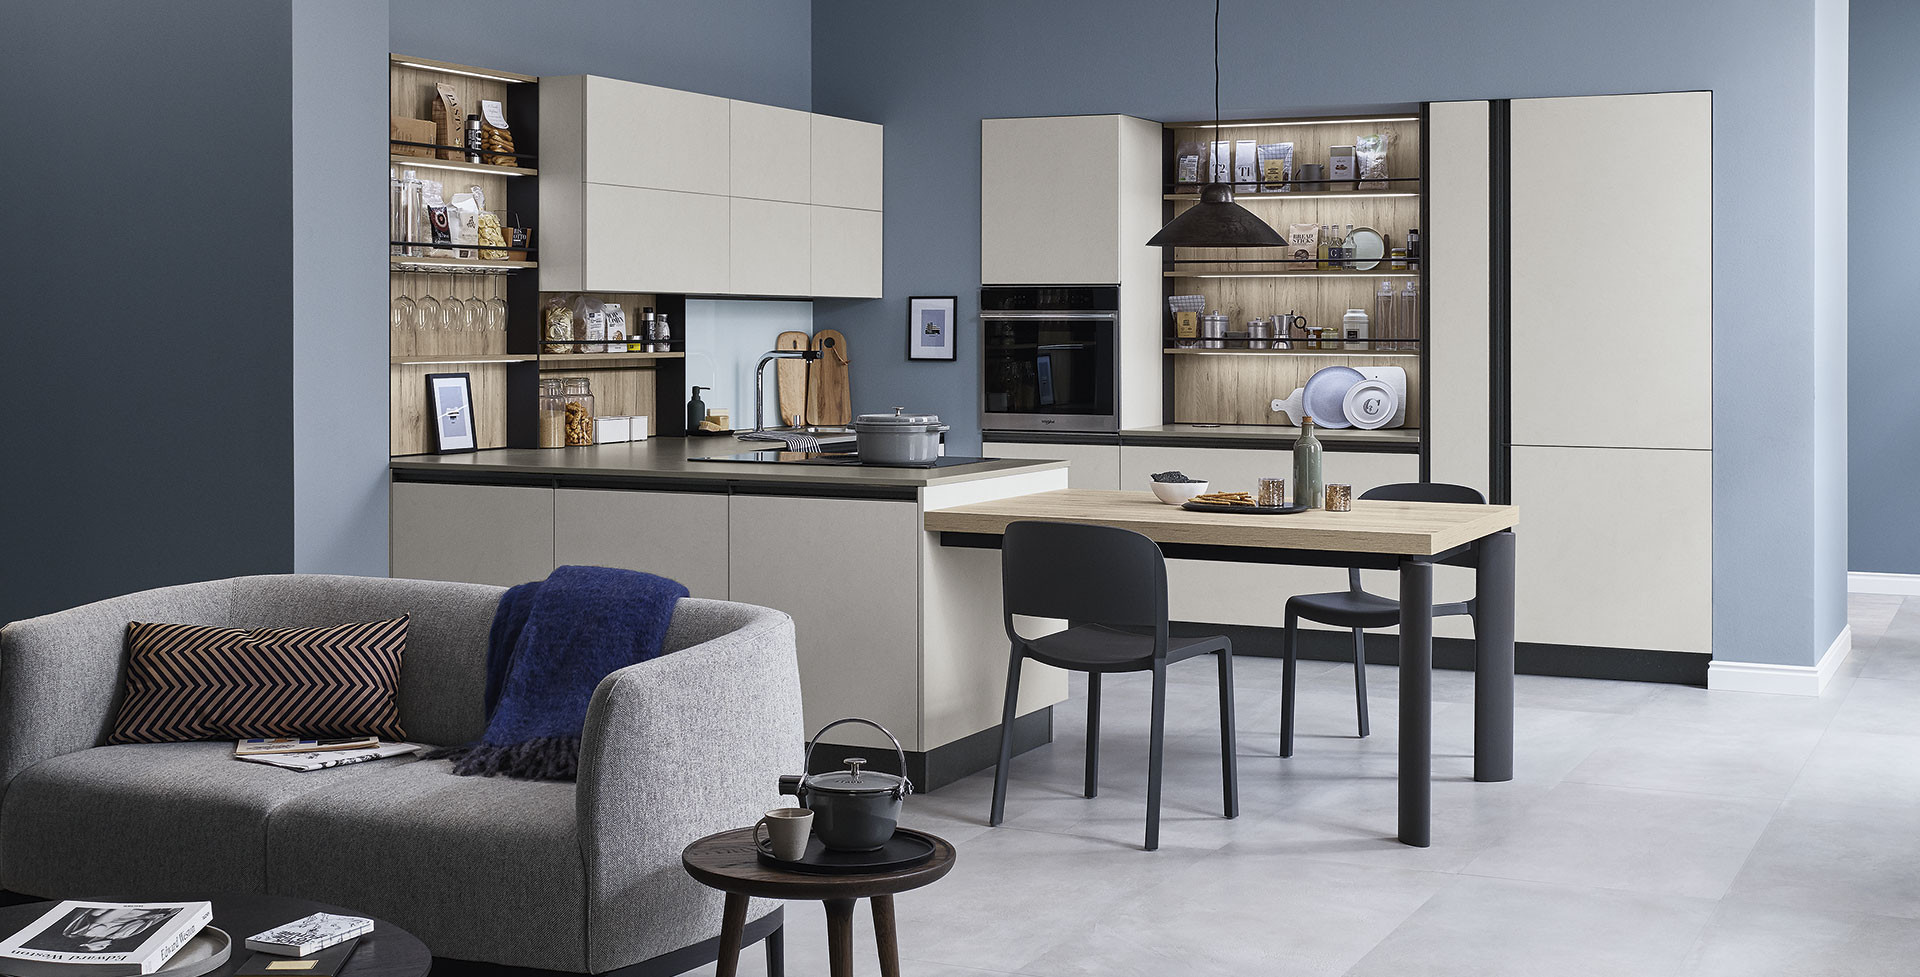 Comment meubler une cuisine avec des meubles de design italien